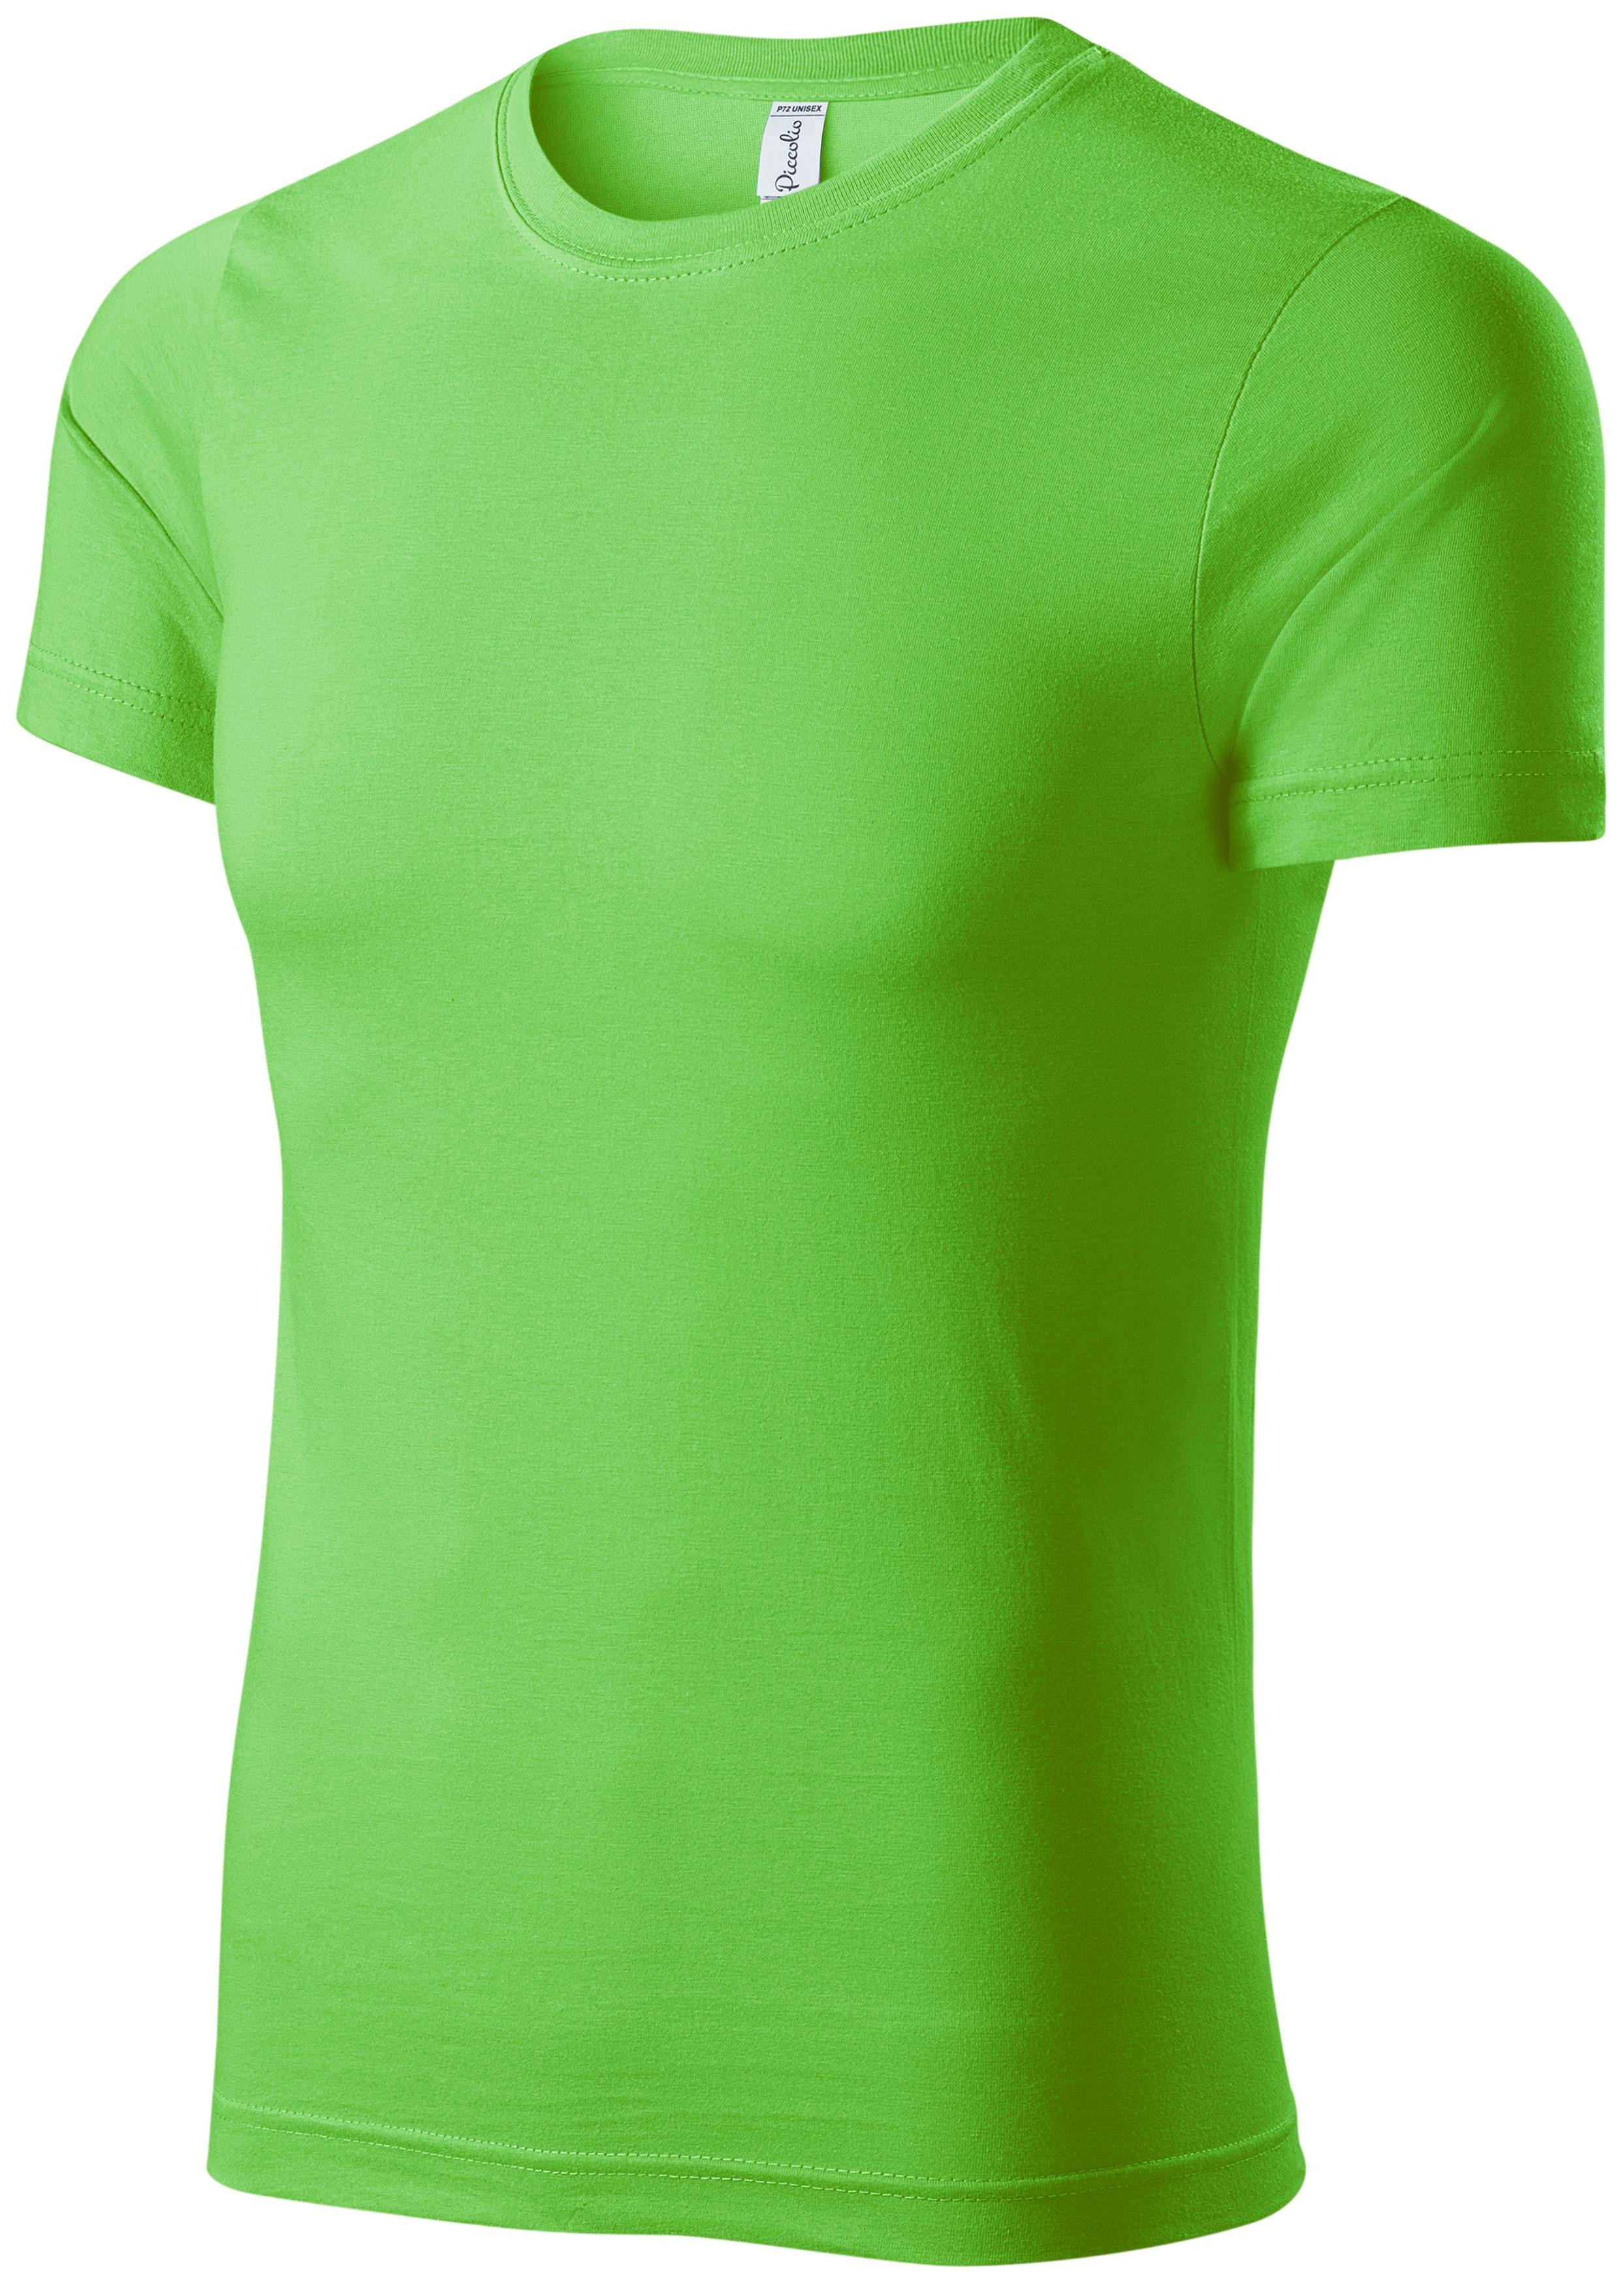 Detské ľahké tričko, jablkovo zelená, 158cm / 12rokov